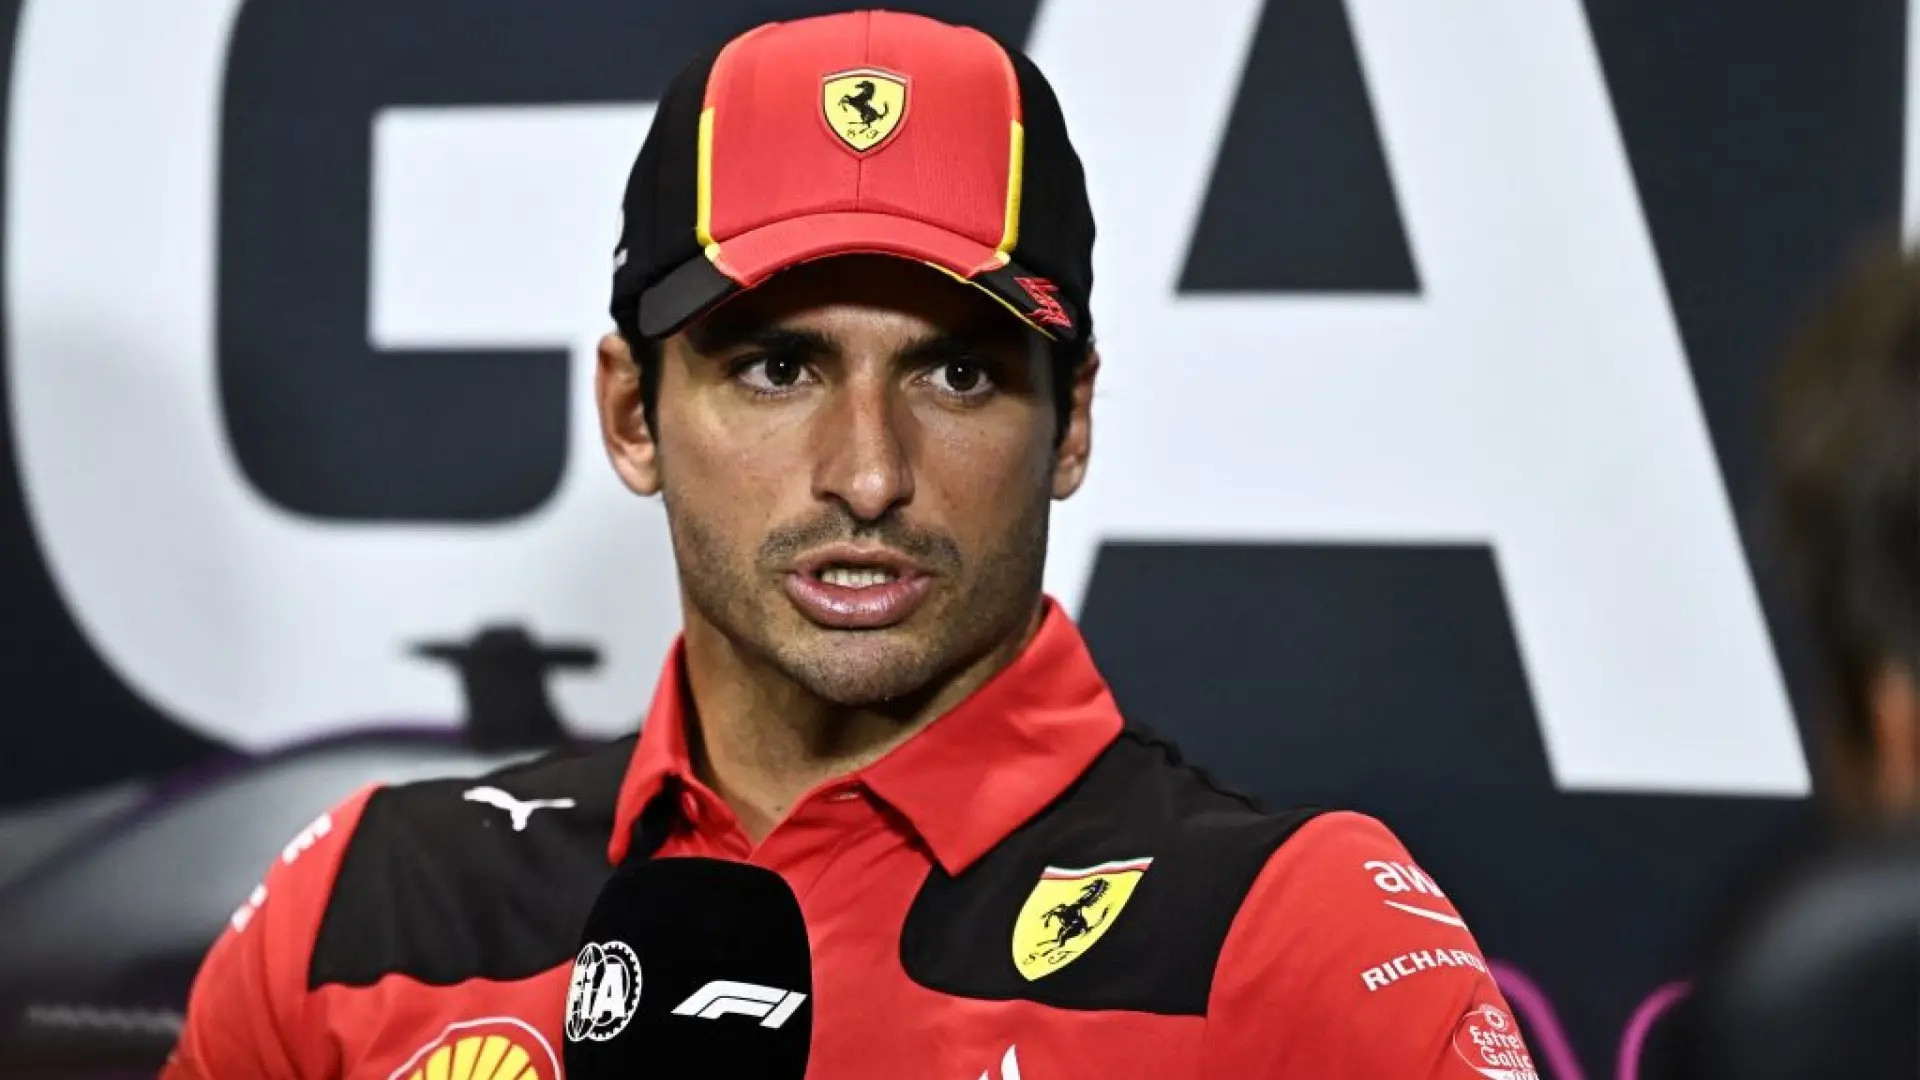 F1, Carlos Sainz fiducioso: “Sempre più feeling”